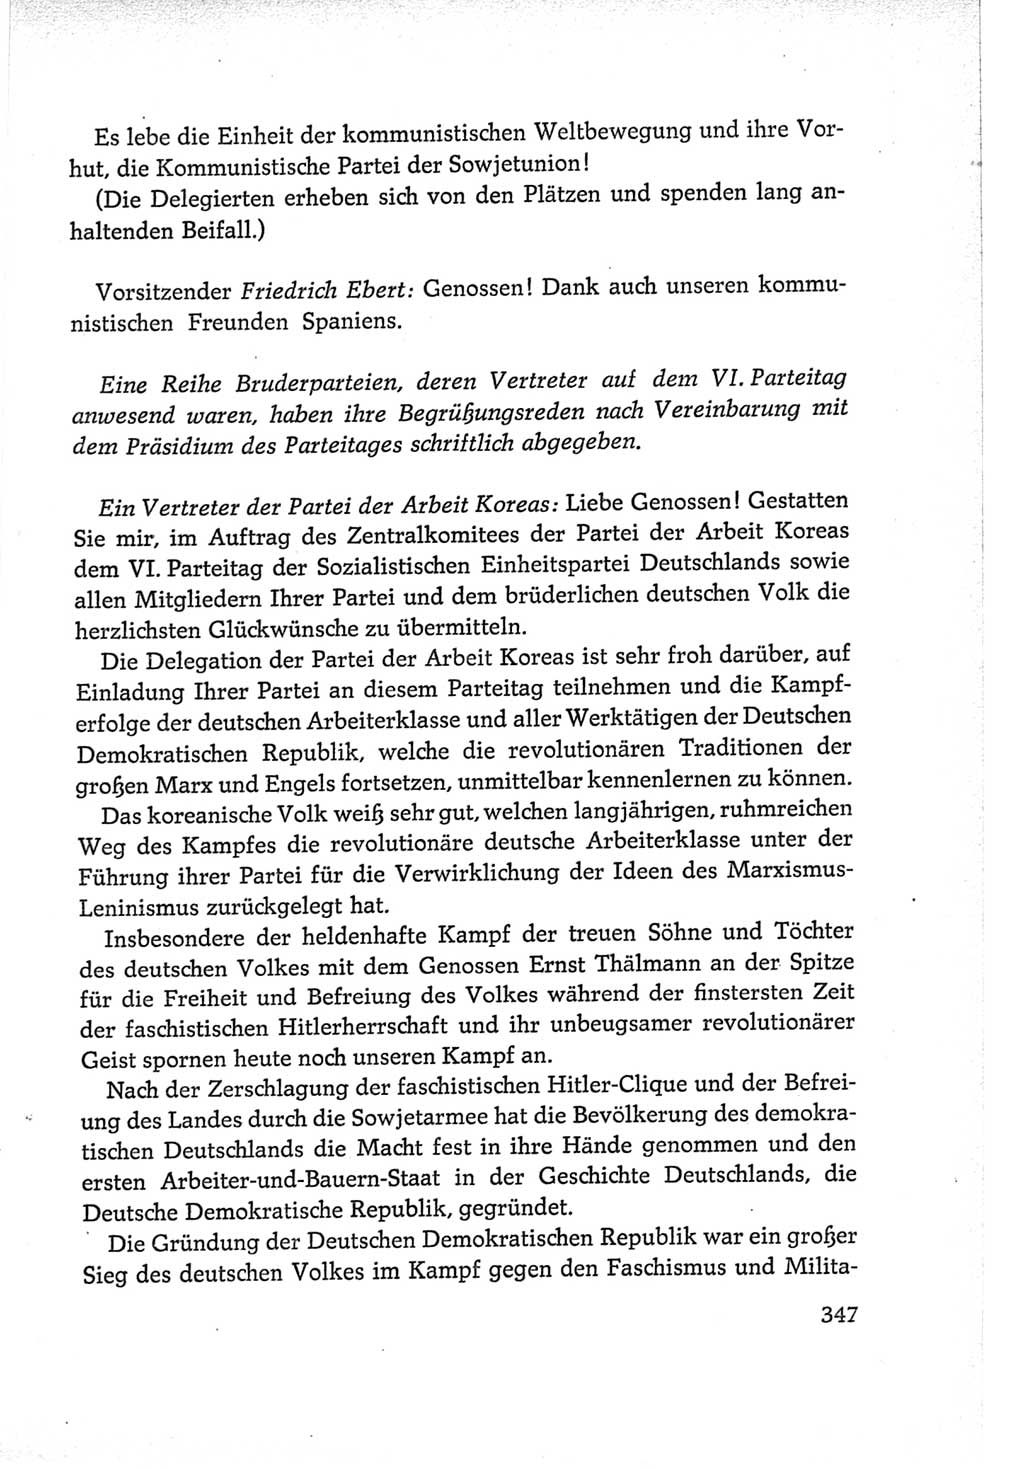 Protokoll der Verhandlungen des Ⅵ. Parteitages der Sozialistischen Einheitspartei Deutschlands (SED) [Deutsche Demokratische Republik (DDR)] 1963, Band Ⅱ, Seite 347 (Prot. Verh. Ⅵ. PT SED DDR 1963, Bd. Ⅱ, S. 347)